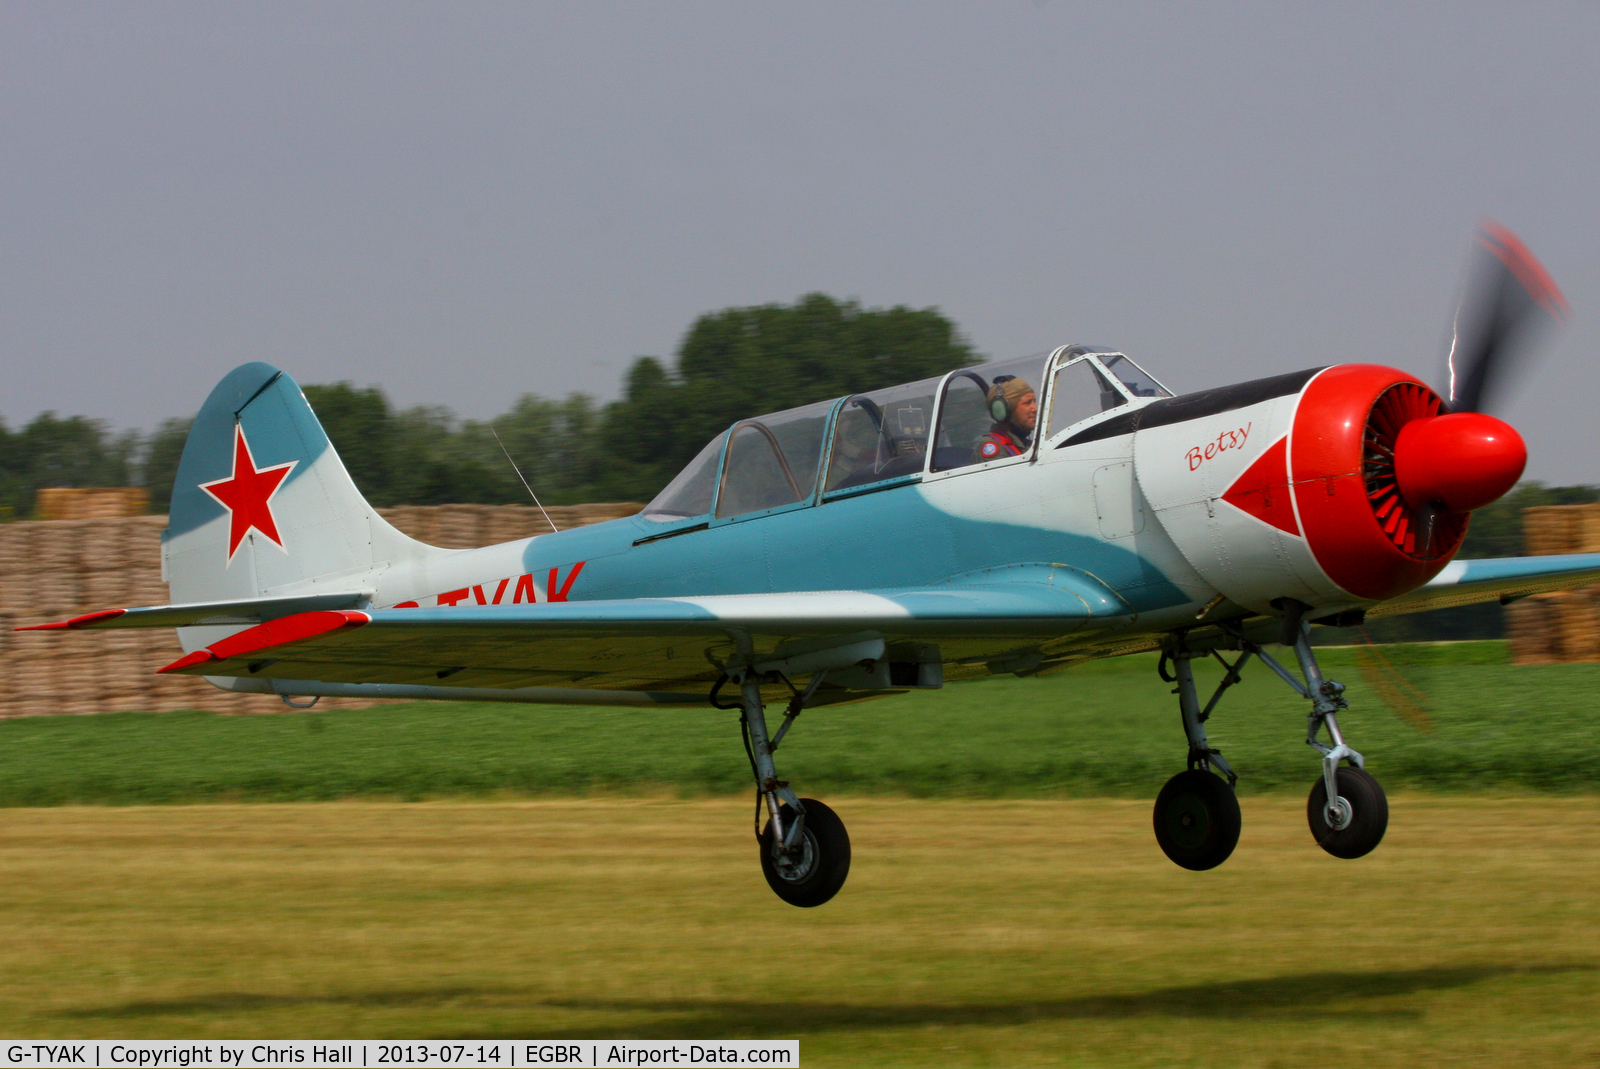 G-TYAK, 1989 Bacau Yak-52 C/N 899907, at the Real Aeroplane Club's Wings & Wheels fly-in, Breighton